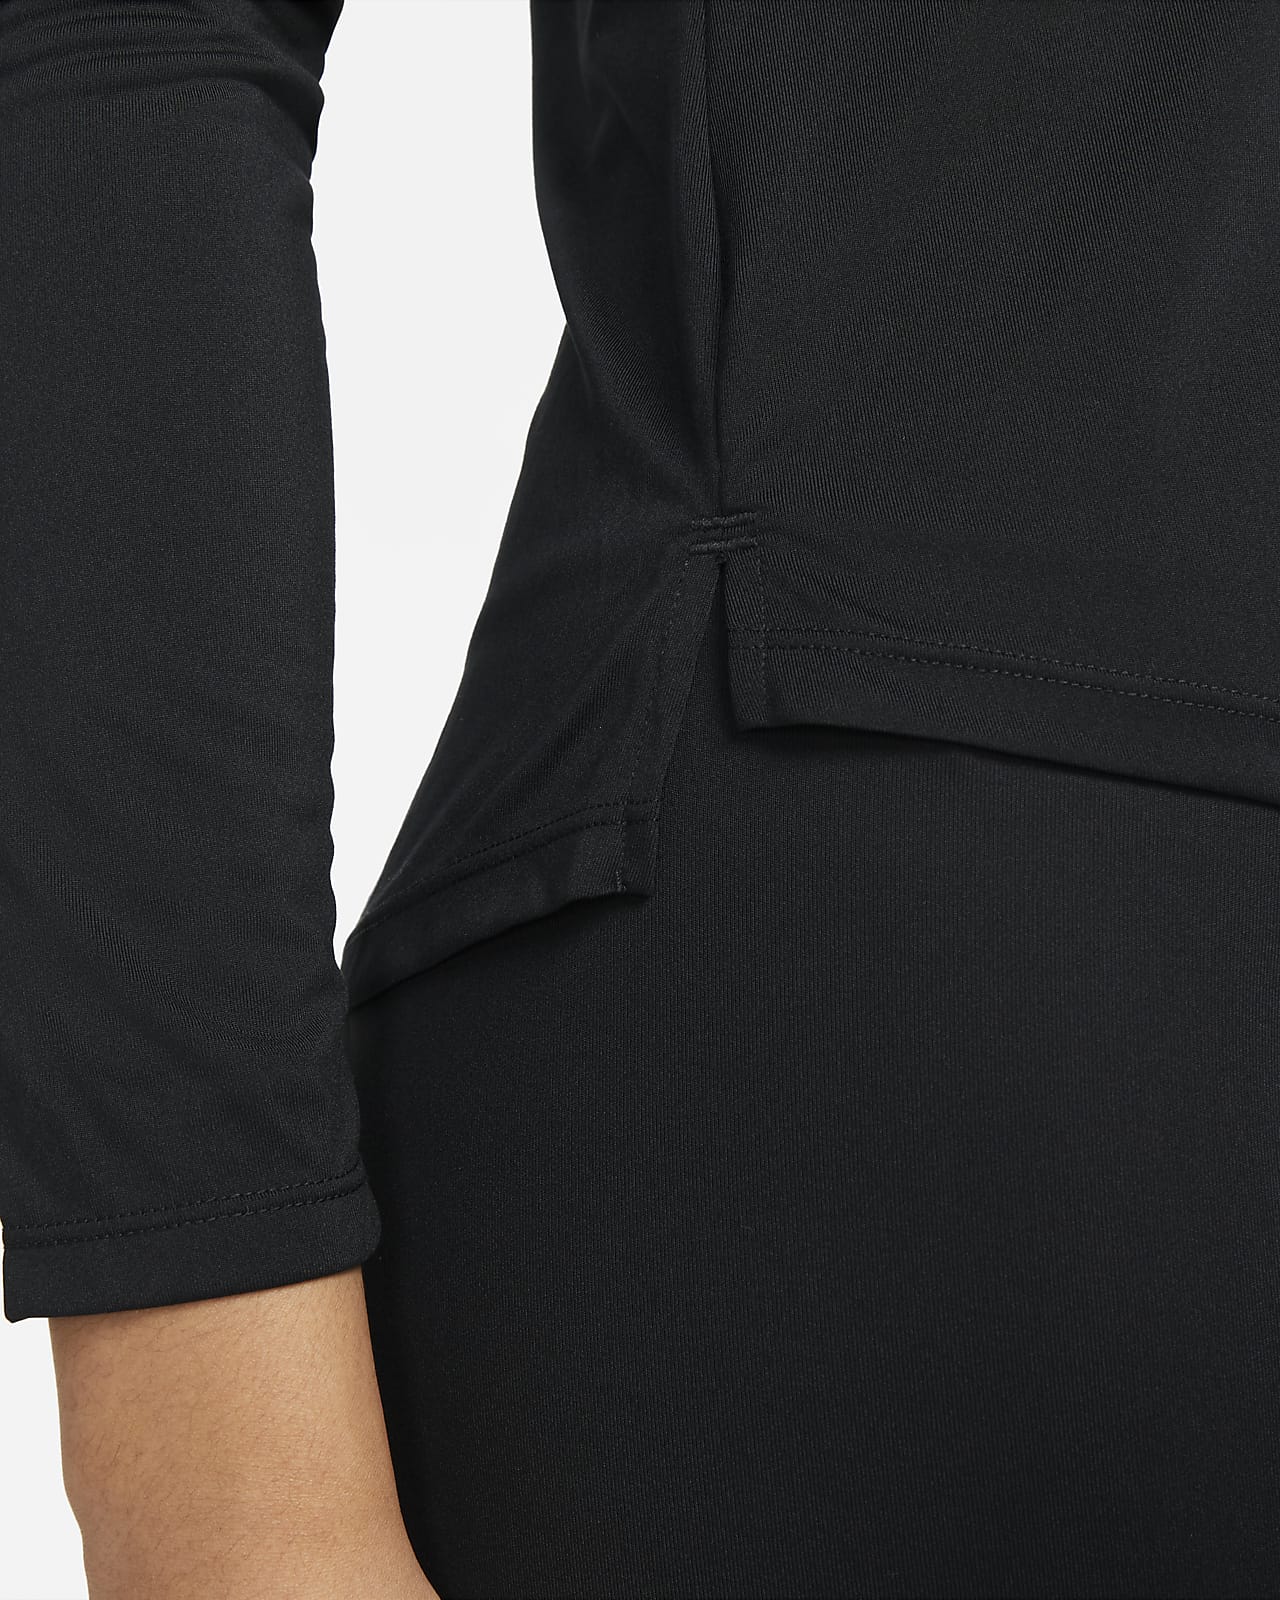 Nike Dri-FIT One Women's Standard Fit Long-Sleeve Top. Nike IN